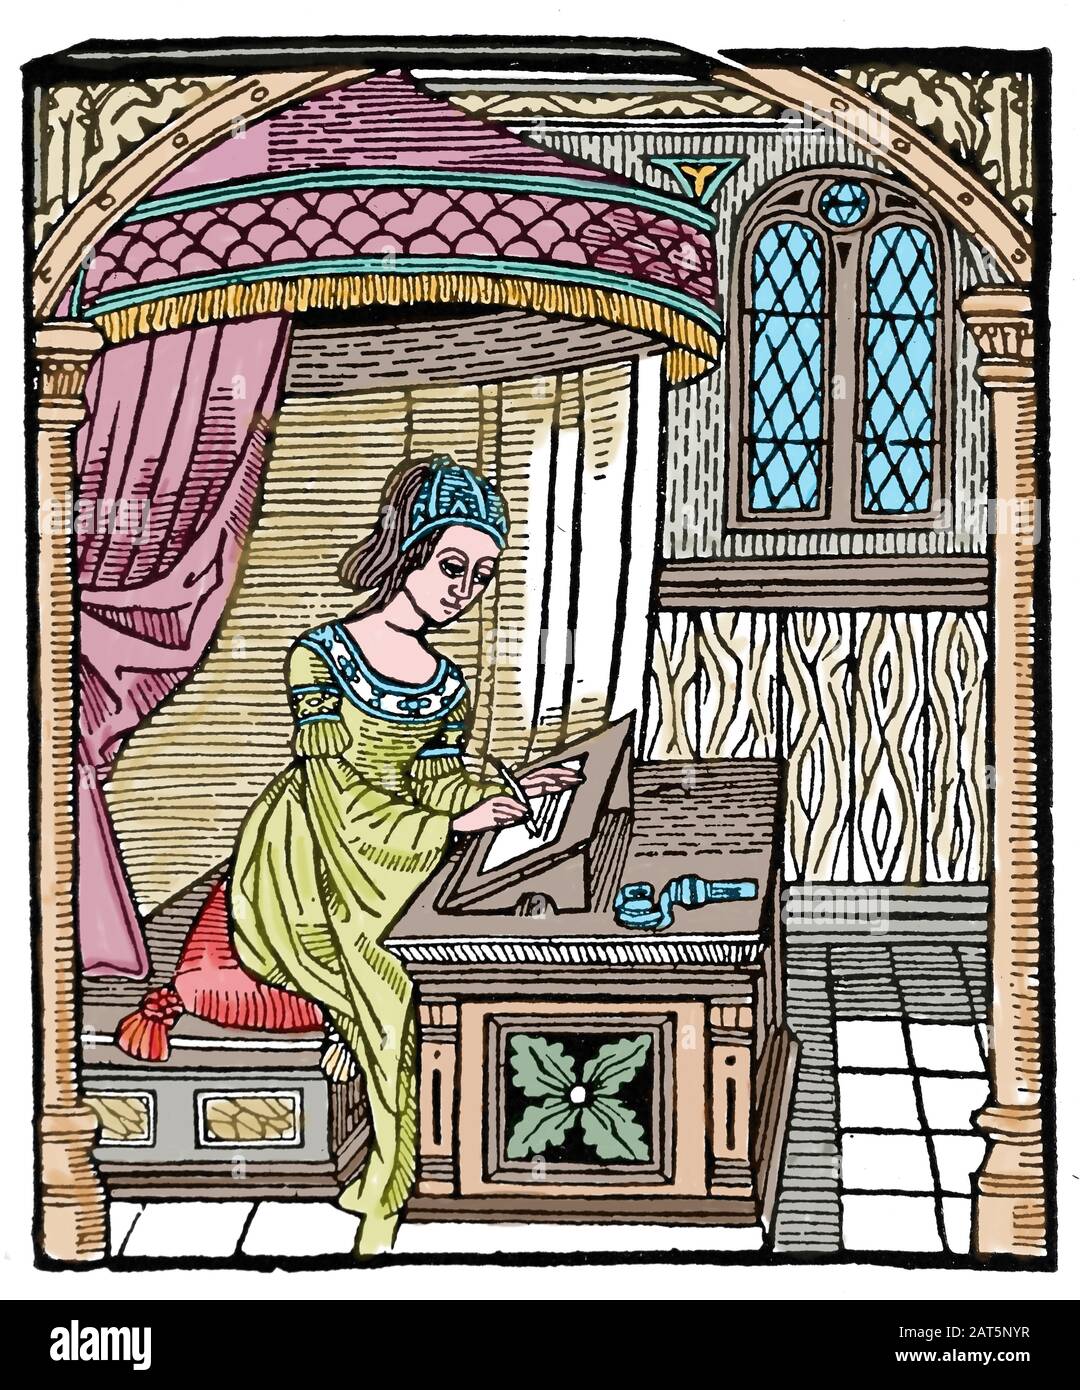 Diego de San Pedro (1437-1498). Kastilischer Schriftsteller. Gefängnis der Liebe, 1492. Prinzessin Laureola schreibt einen Brief. Gravur. Stockfoto